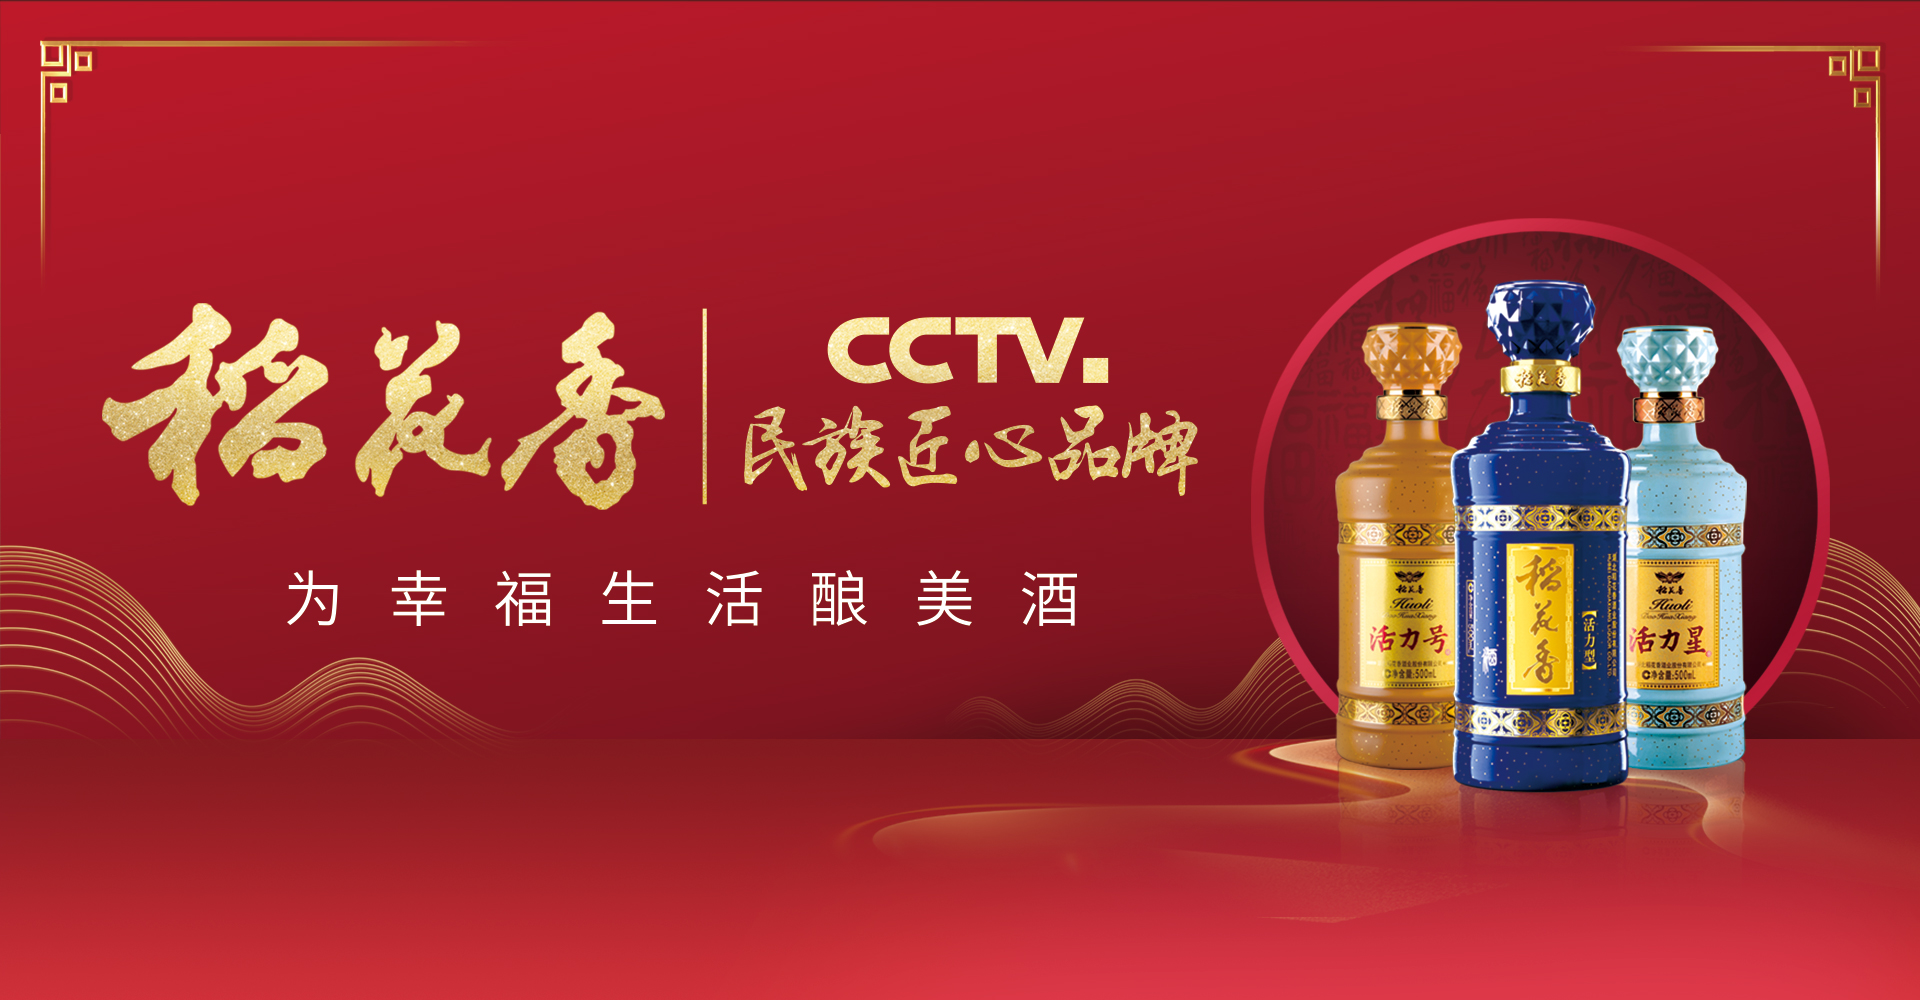 亚娱体育·(中国)官方网站 CCTV民族匠心品牌